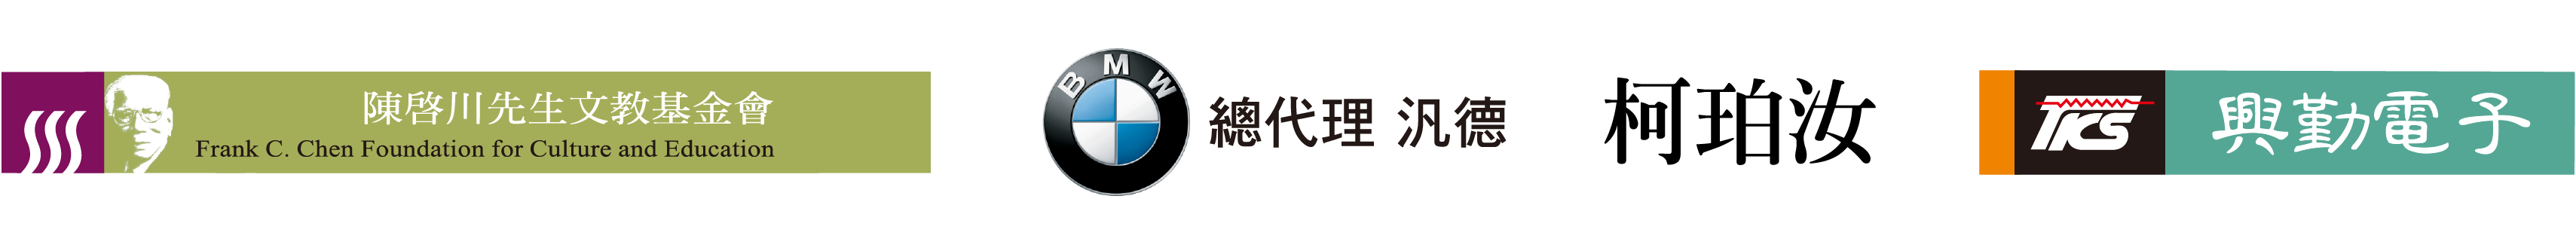 贊助單位標誌：陳啟川先生文教基金會、BMW總代理 汎德、柯珀汝、興勤電子